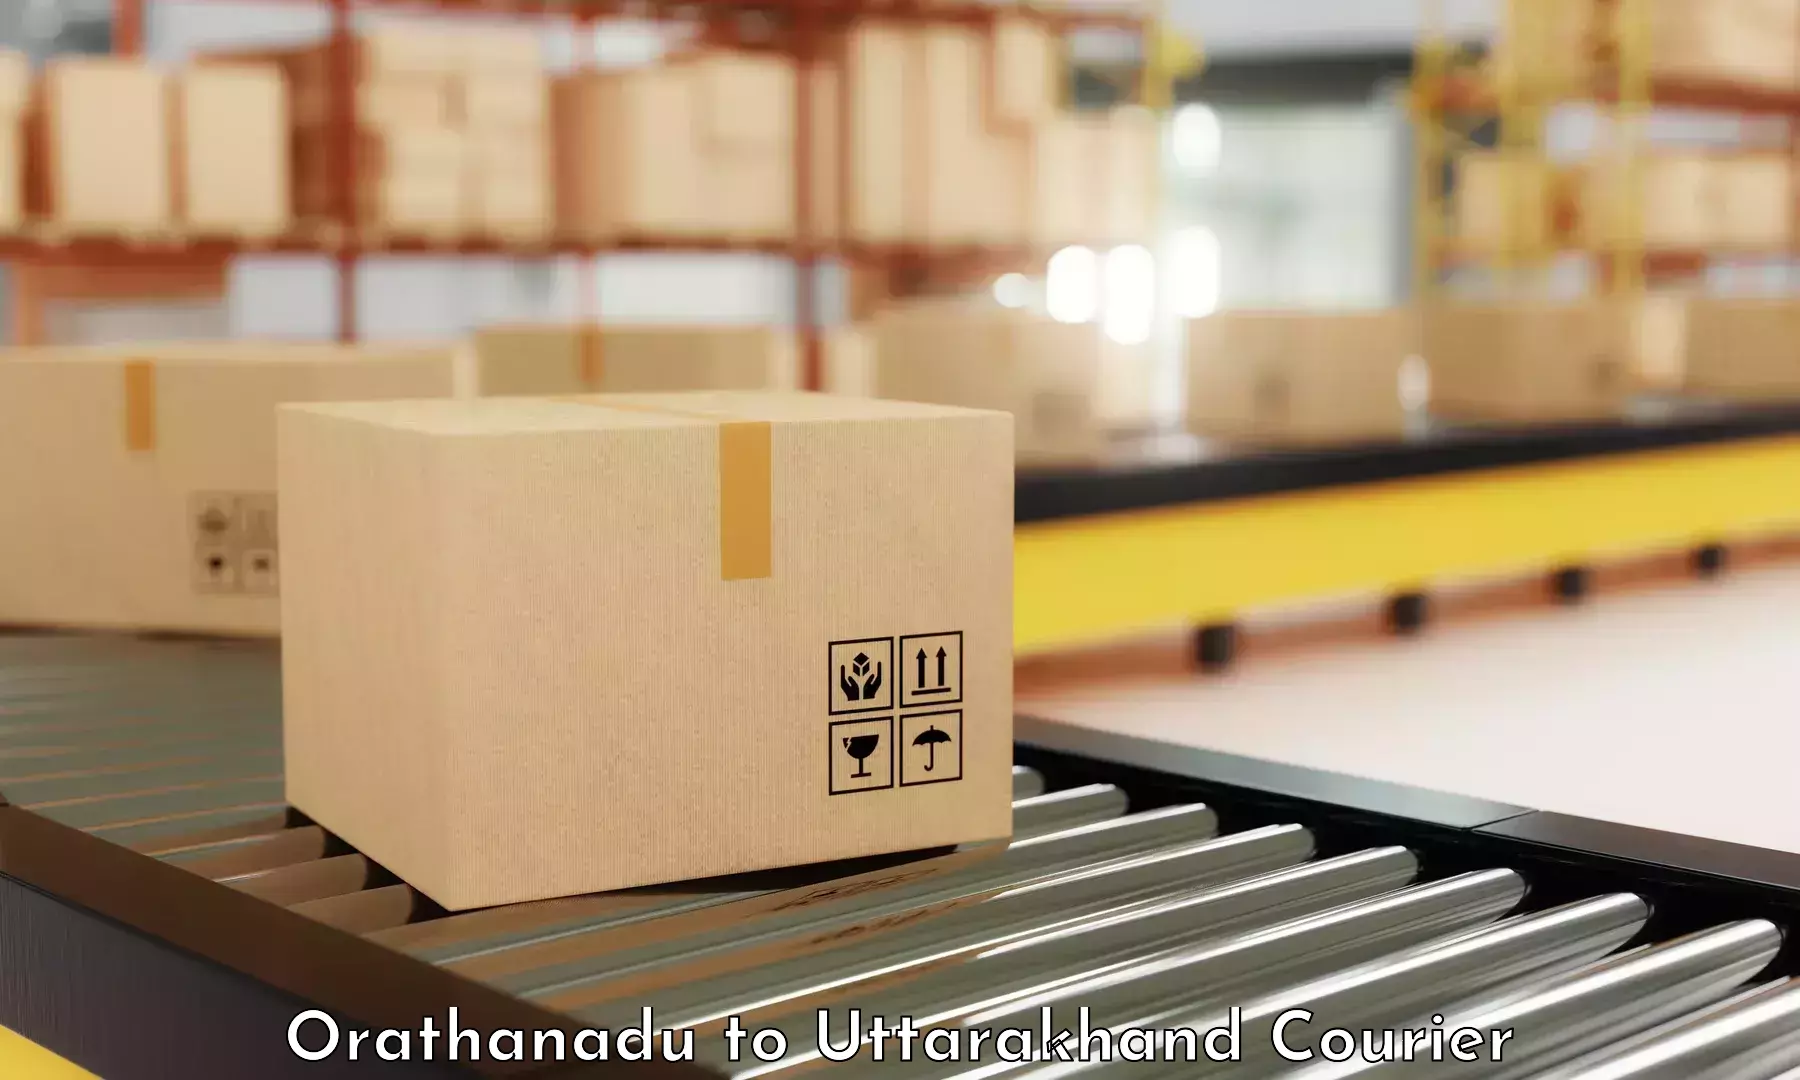 24-hour courier service Orathanadu to Uttarakhand